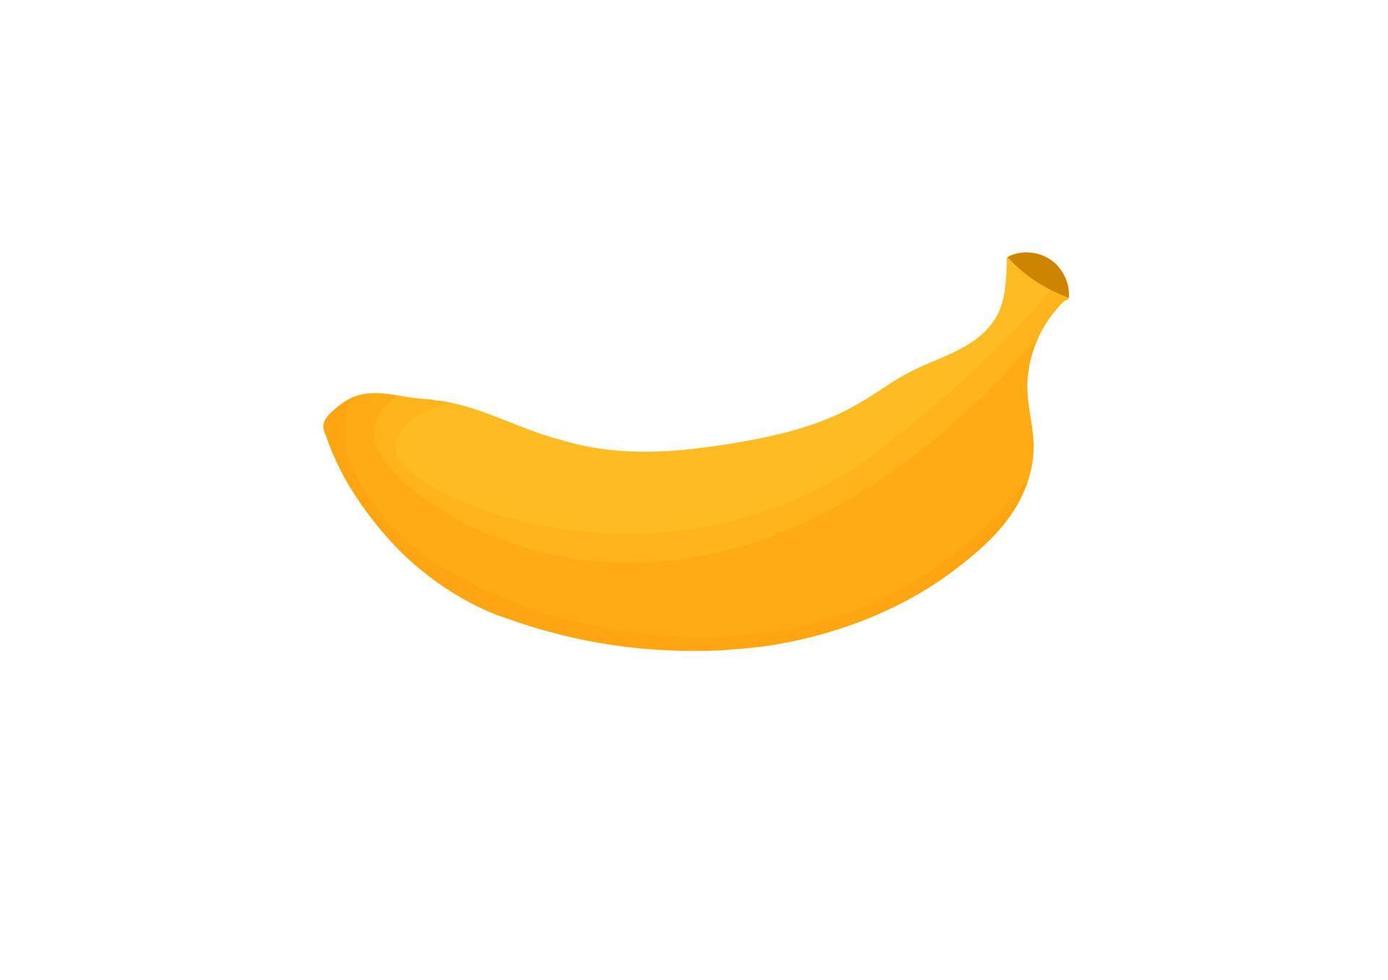 semplice design a banana con una combinazione di giallo scuro e giallo chiaro vettore